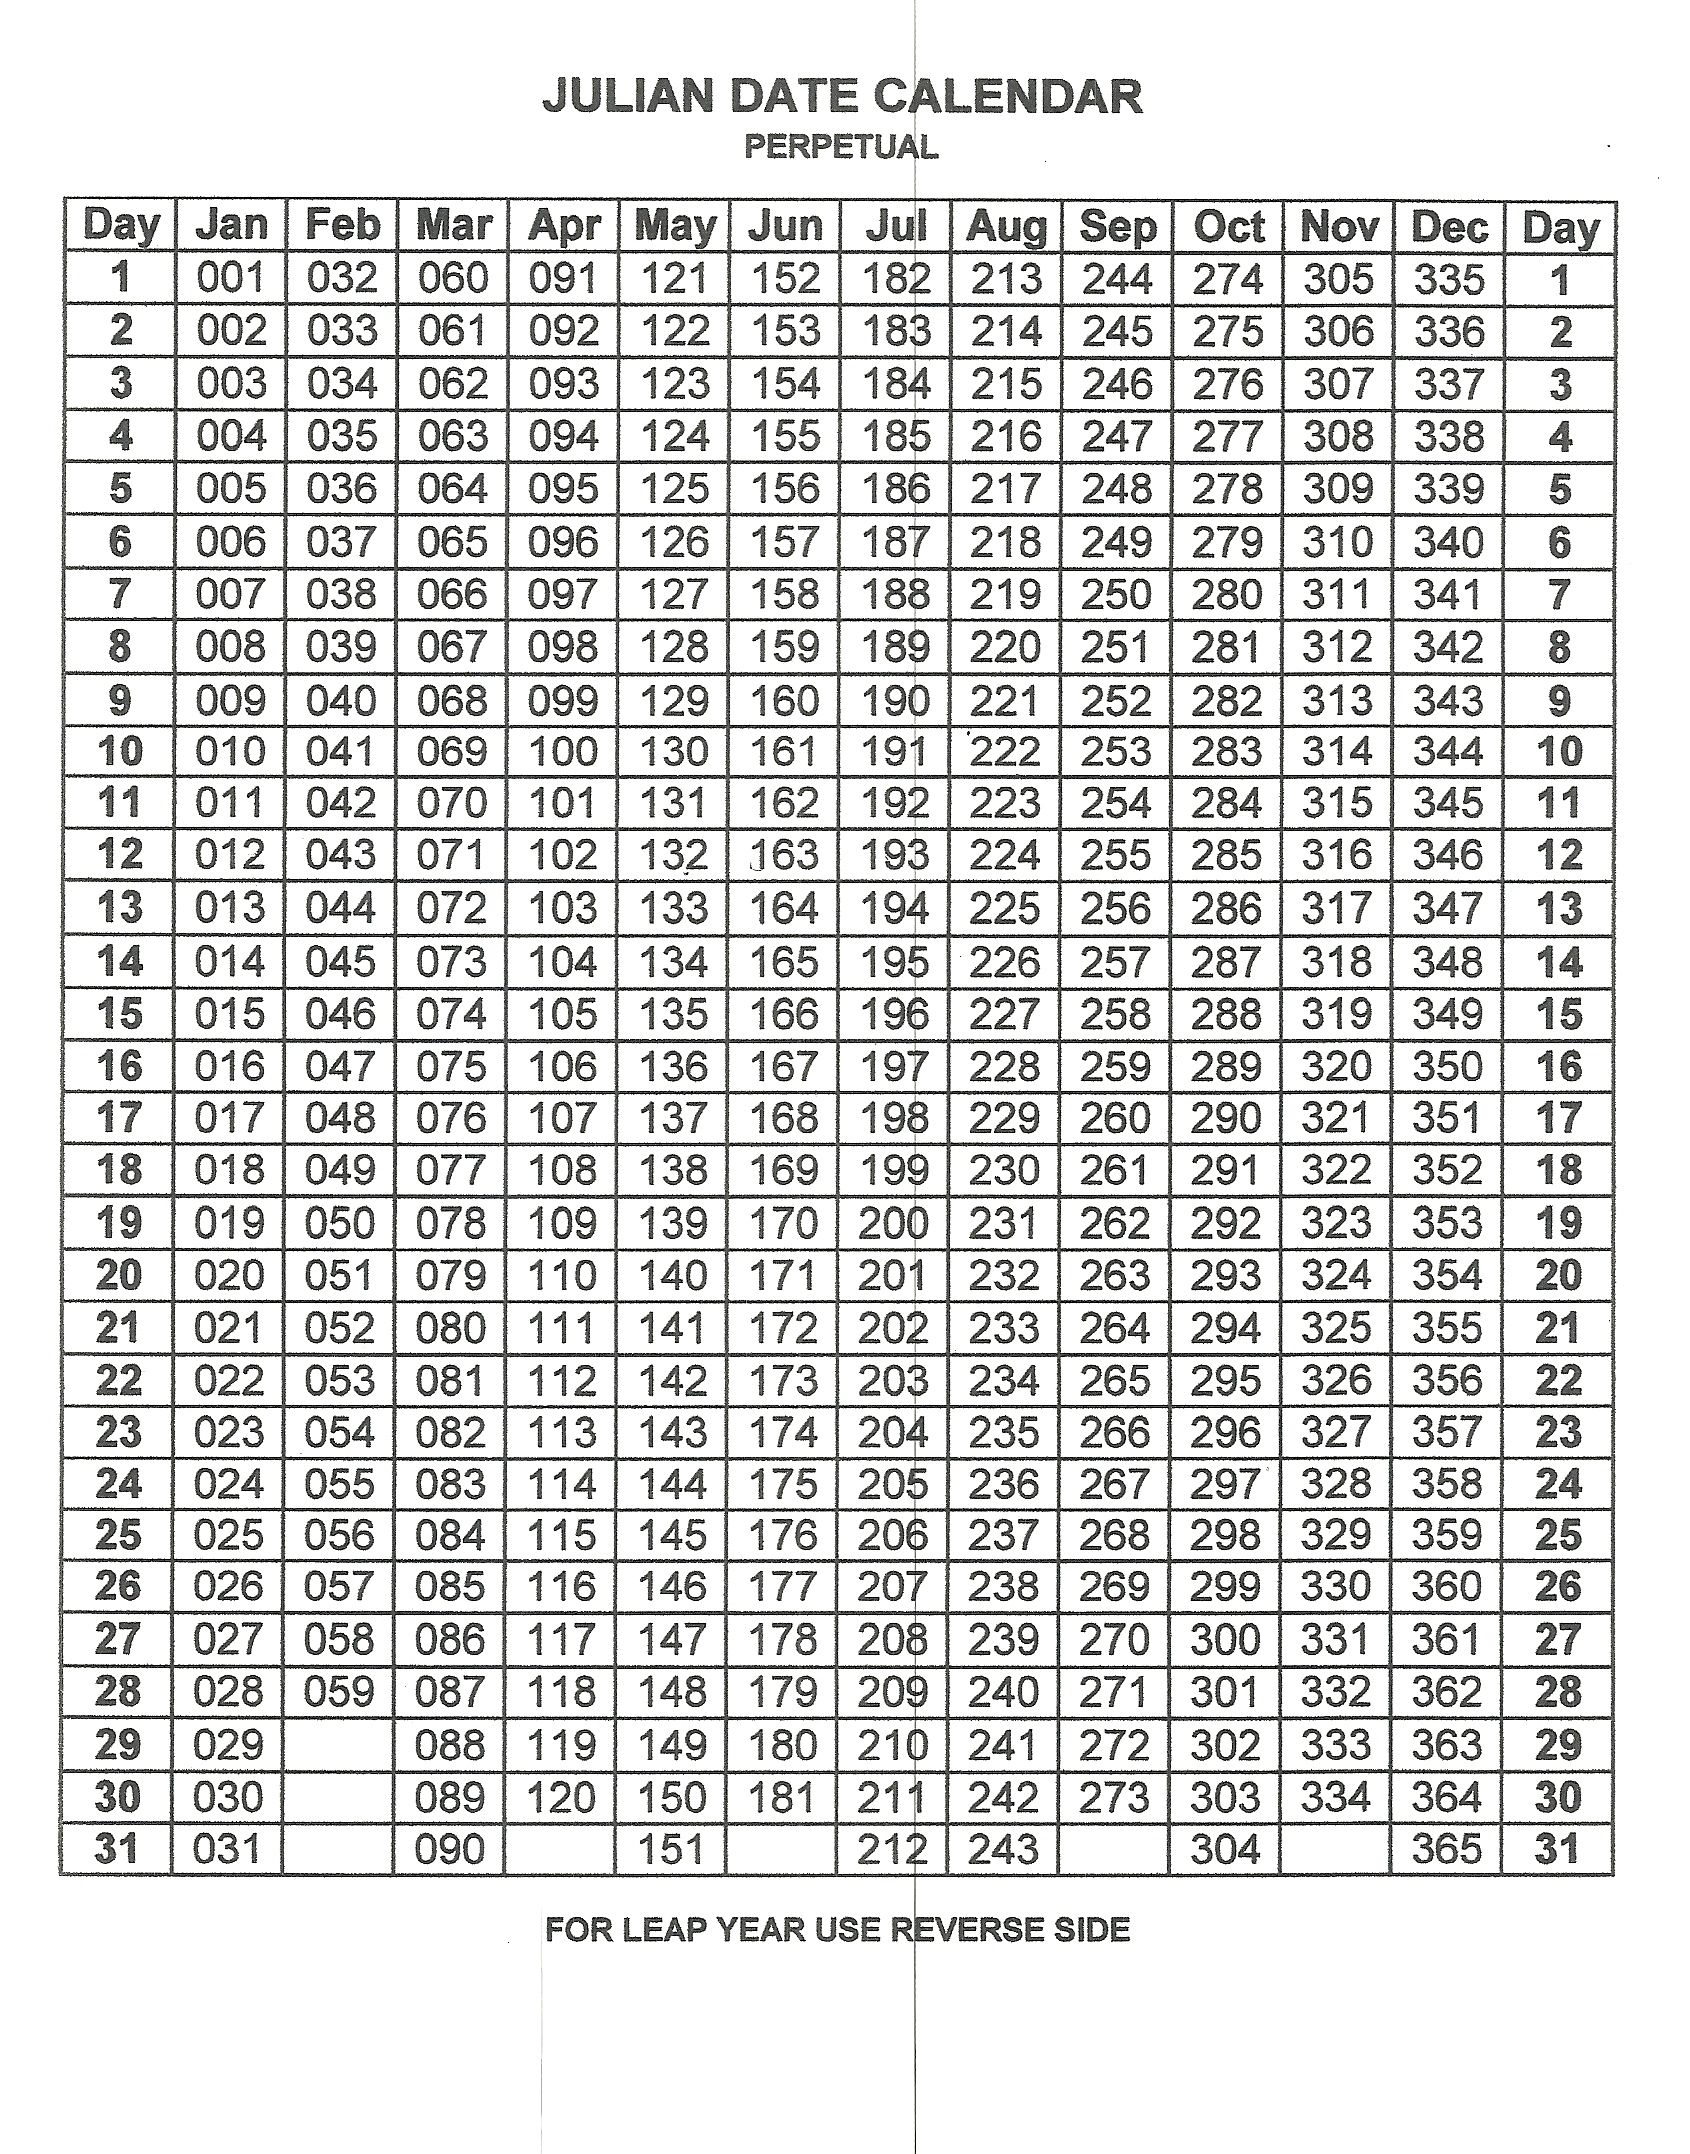 Julian Date Calendar 2020 | Calendar For Planning